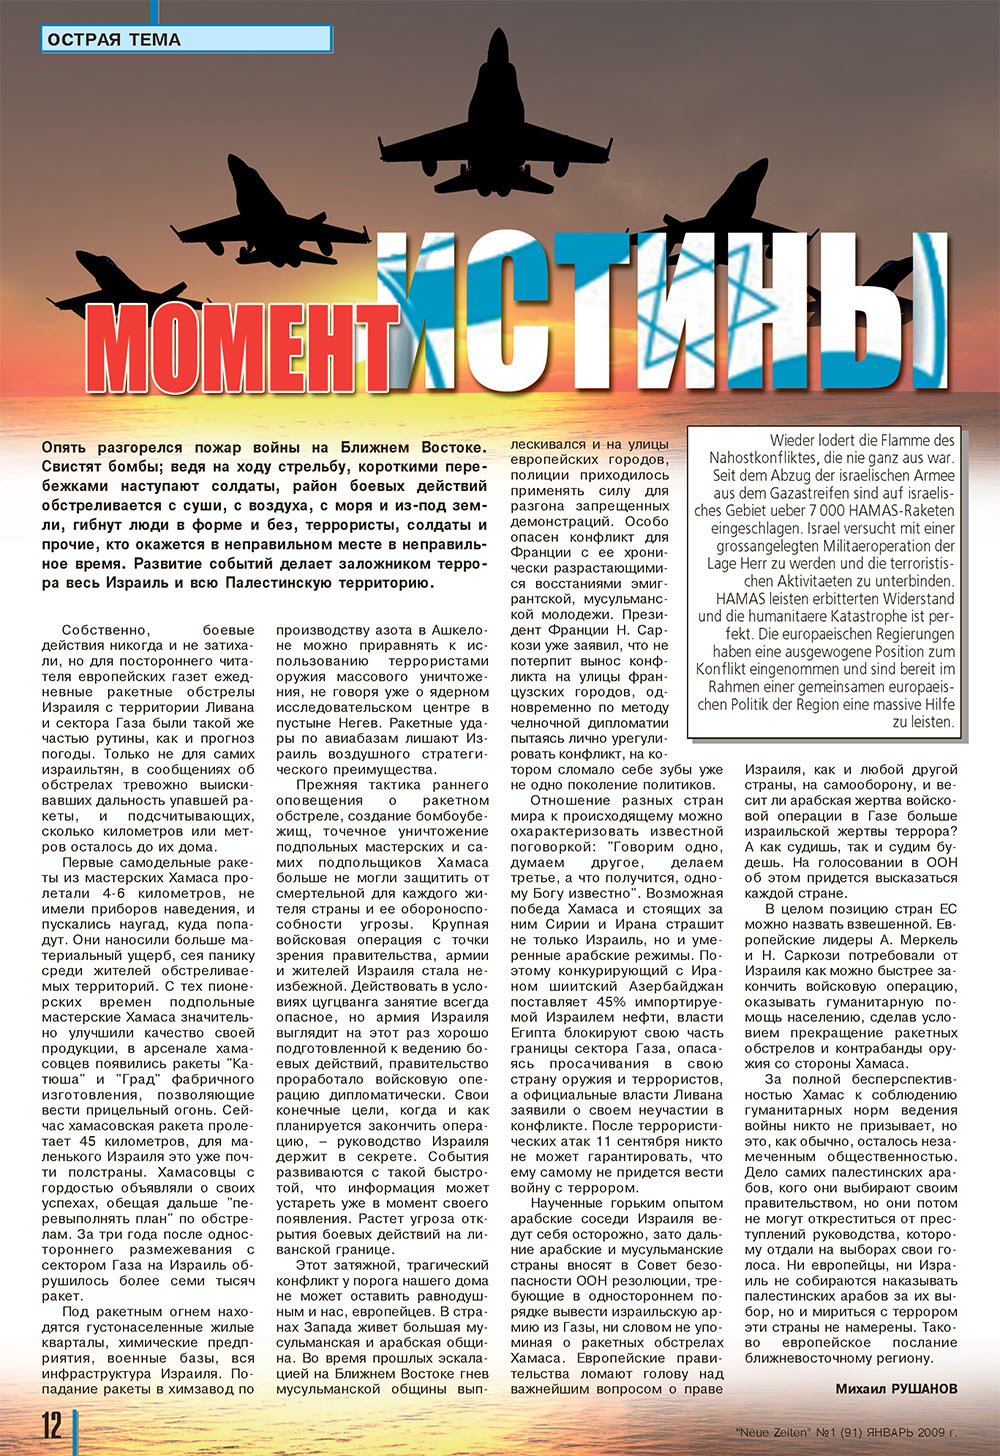 Neue Zeiten, журнал. 2009 №1 стр.12